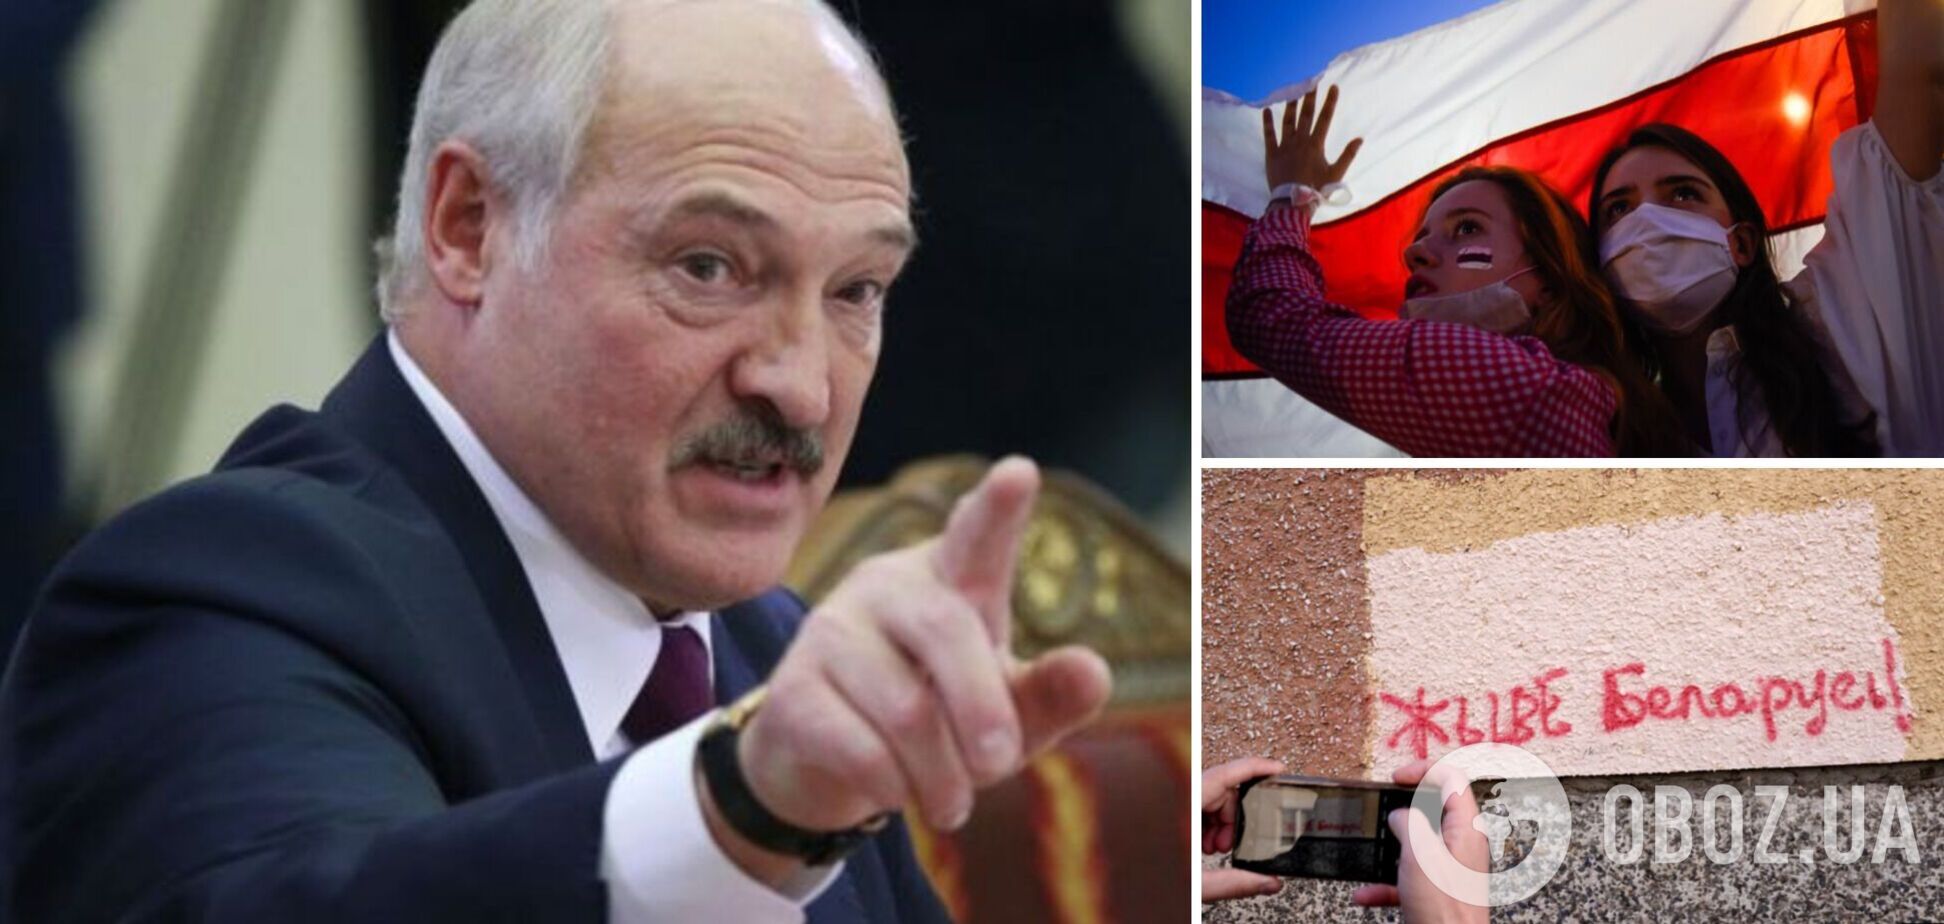 Режим Лукашенко признал лозунг 'Жыве Беларусь!' нацистским, 'приплев' его к дивизии Waffen-SS